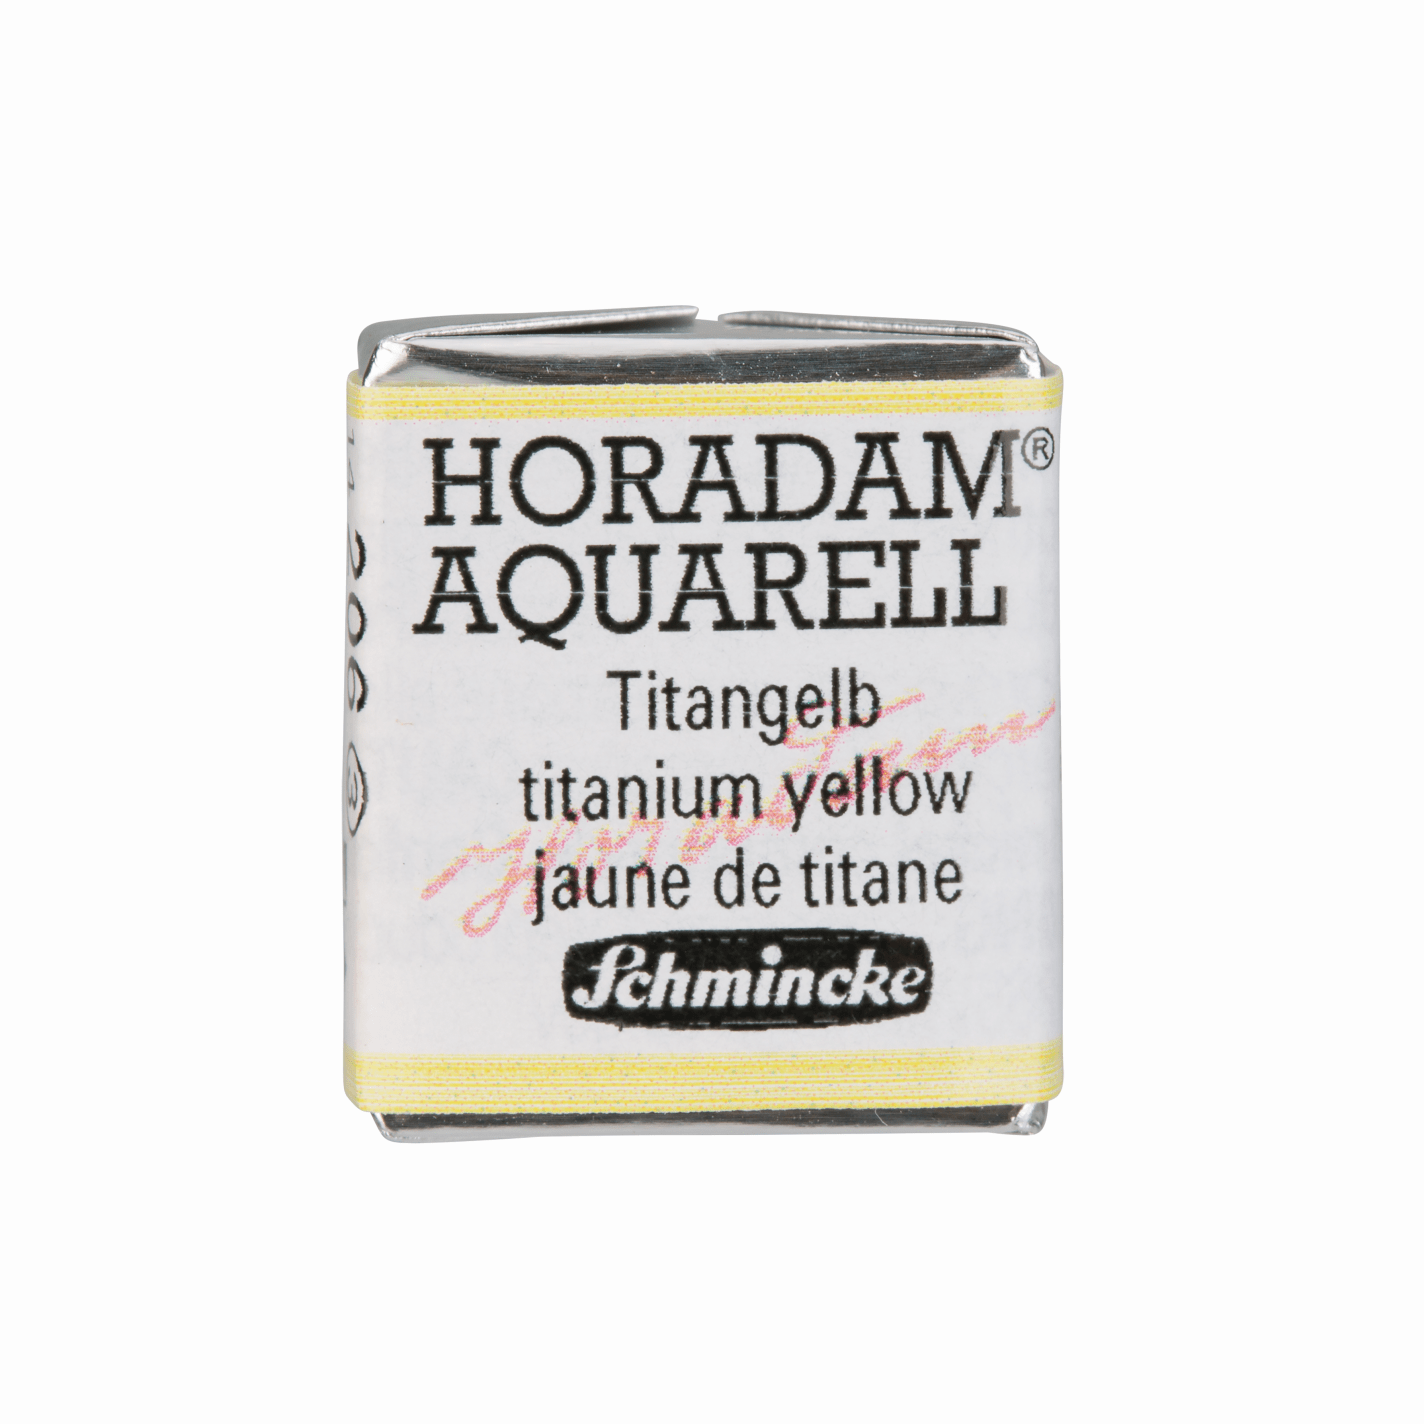 Schmincke Horadam Aquarell pans 1/2 pan Titanium Yellow